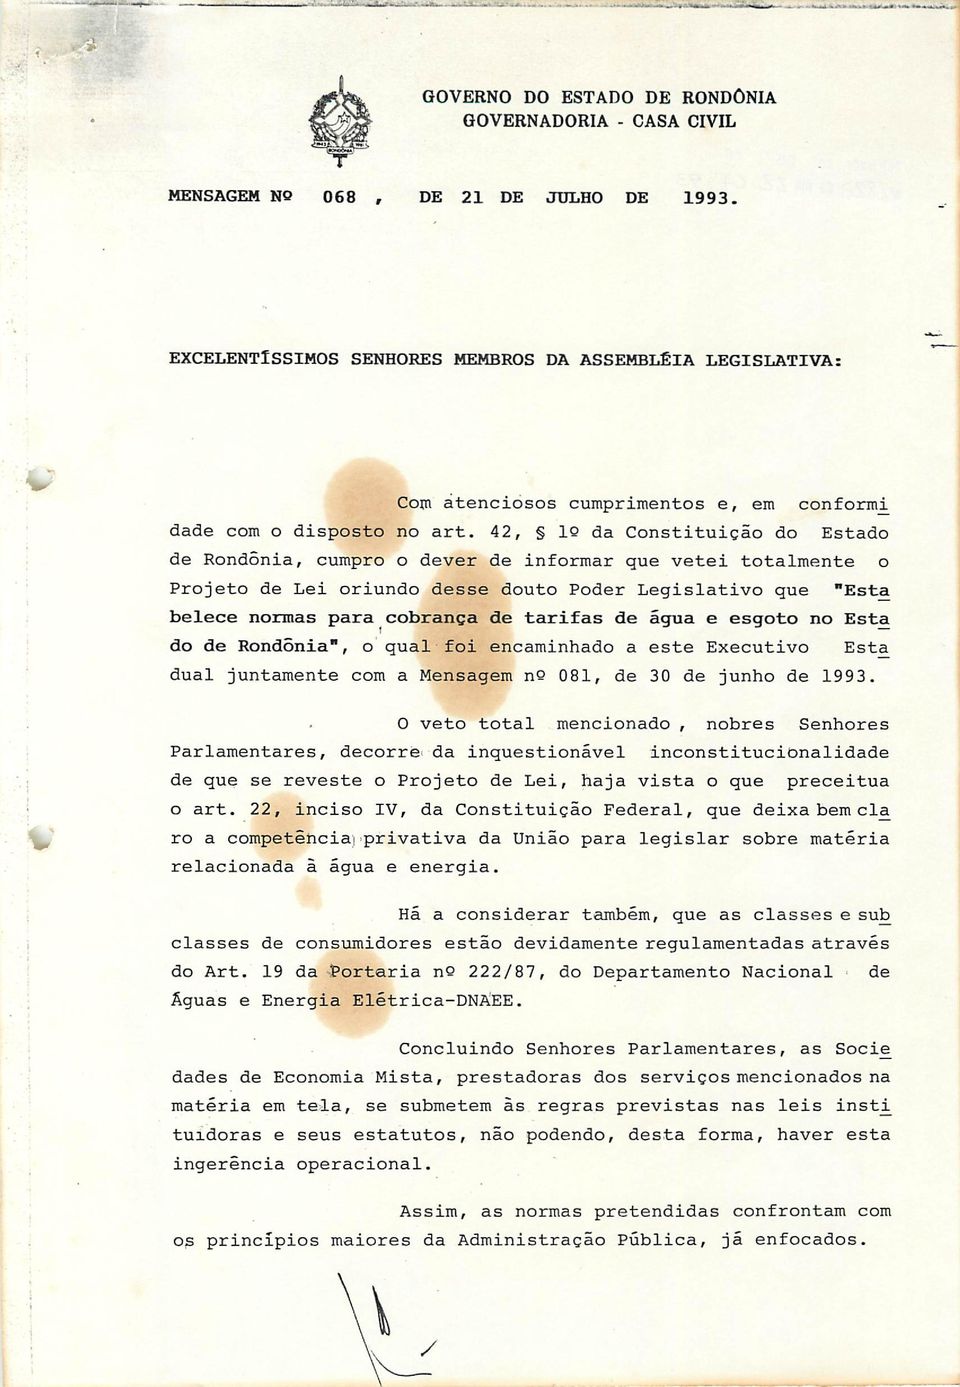 42, 10 da Constituição do Estado de Rondônia, cumpro o dever de informar que vetei totalmente o Projeto de Lei oriundo desse douto Poder Legislativo que "Esta belece normas para cobrança de tarifas